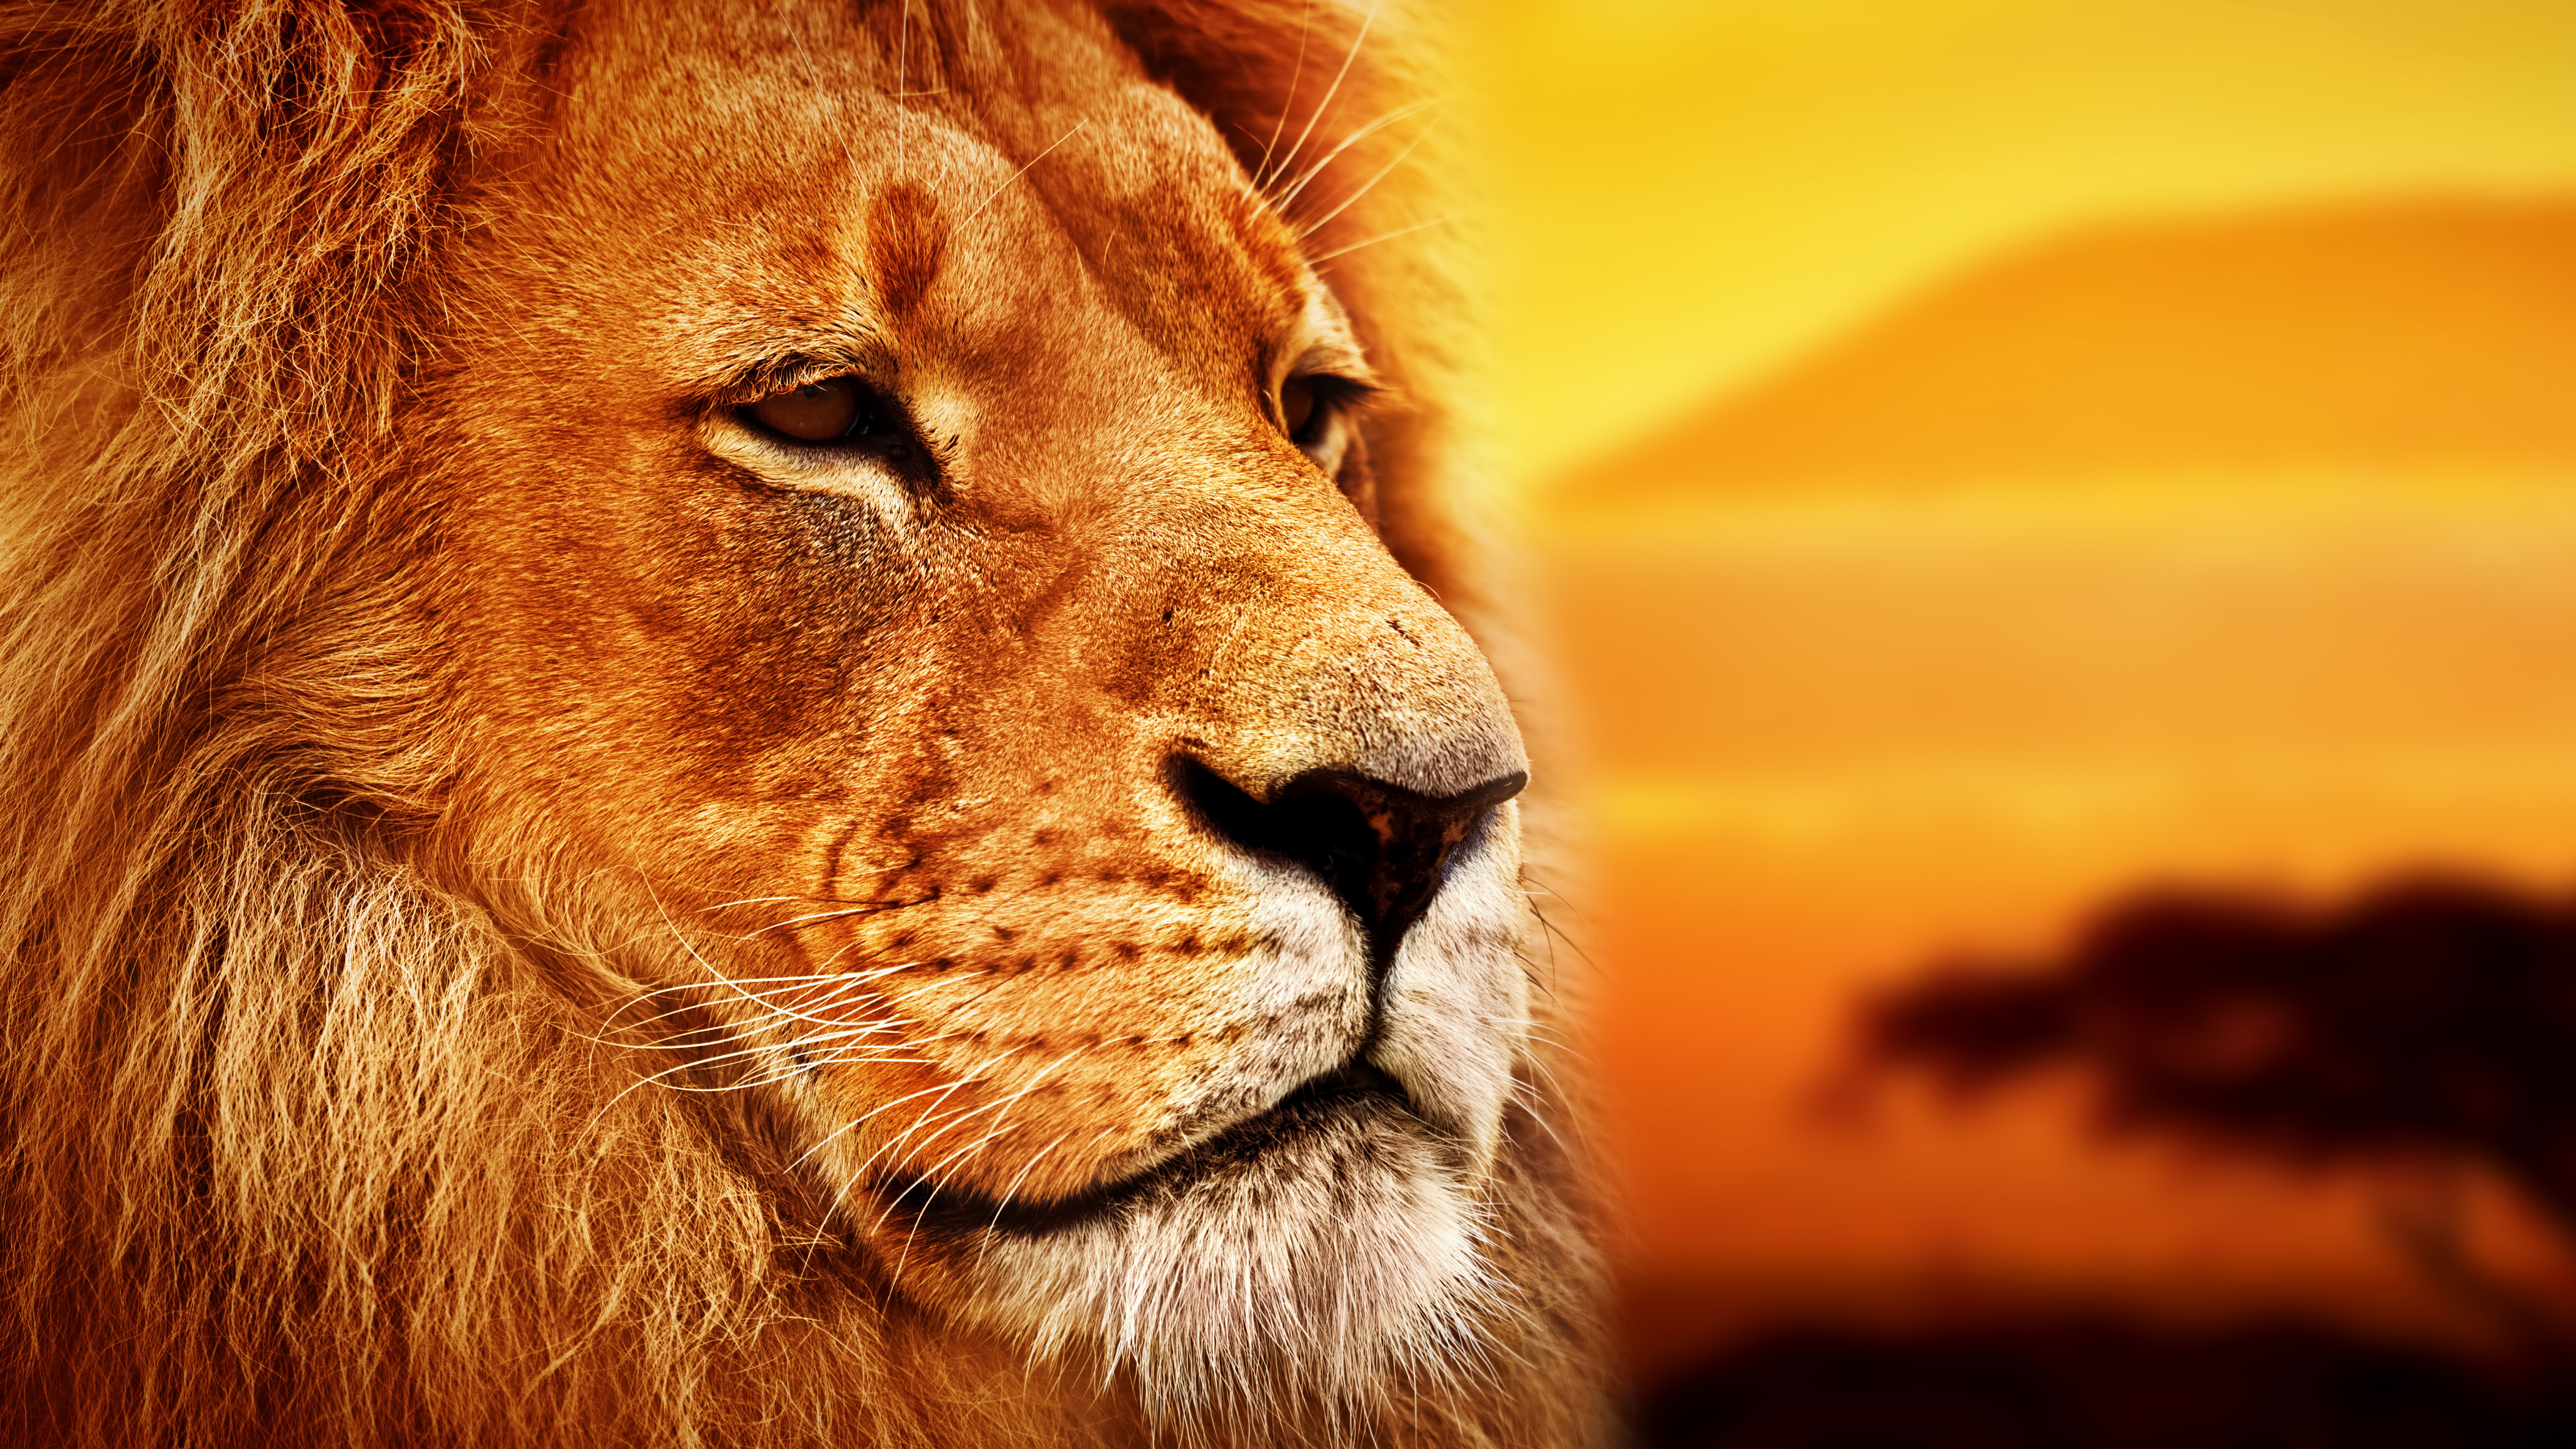 Wallpaper Lion, Savanna, 8K, Animals 16178-3614